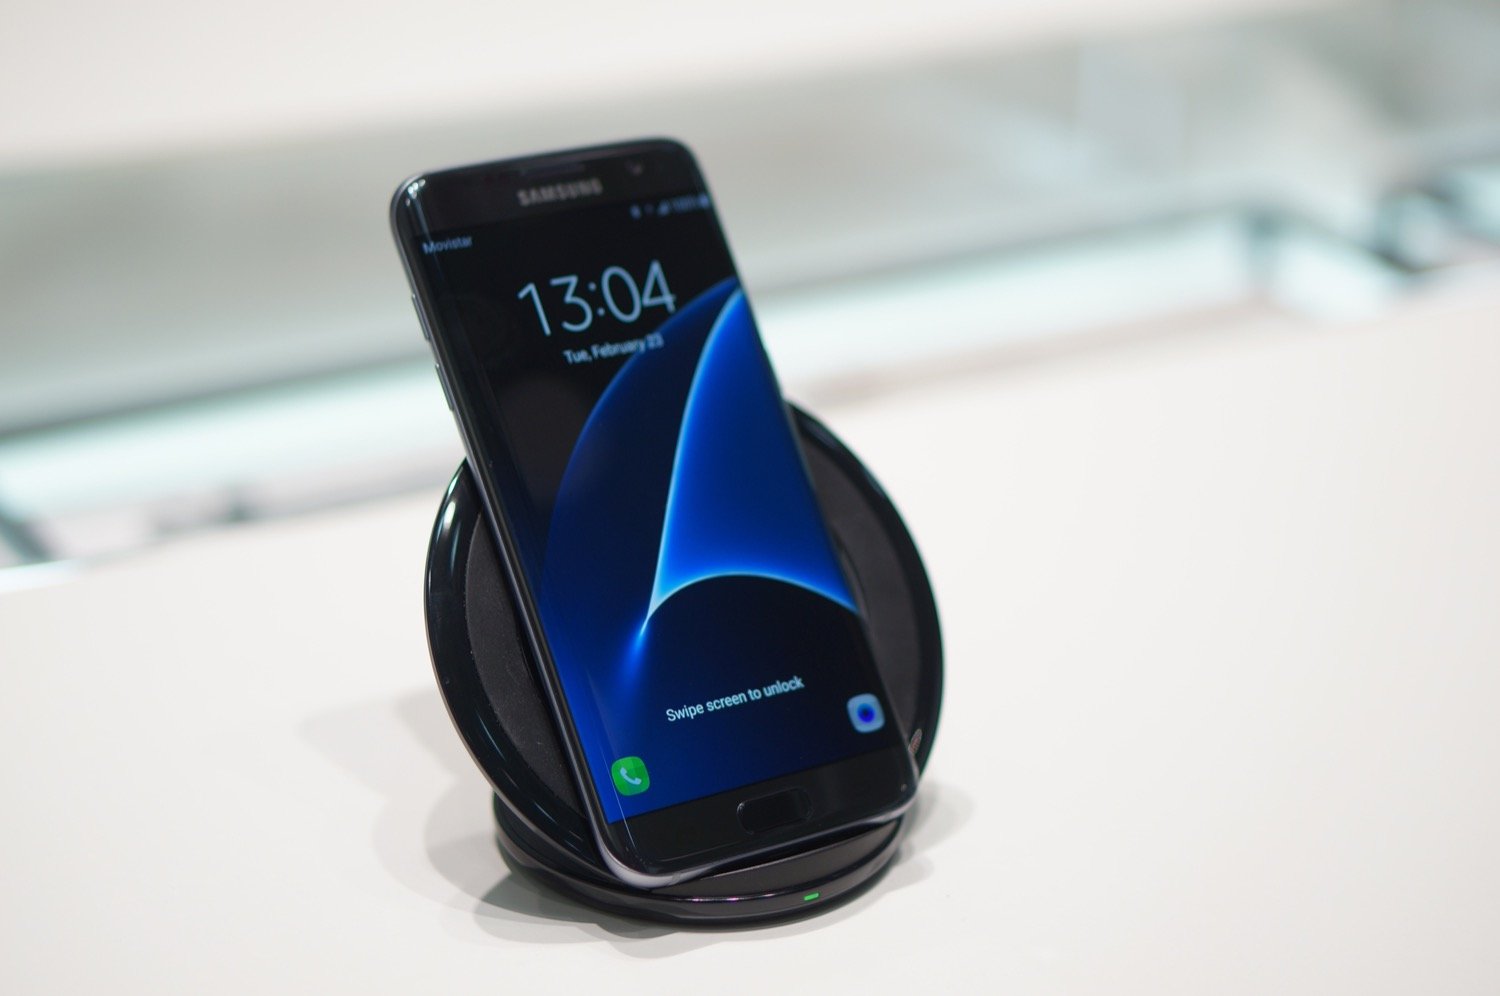 Aperçu du chargeur à induction du Samsung Galaxy S7